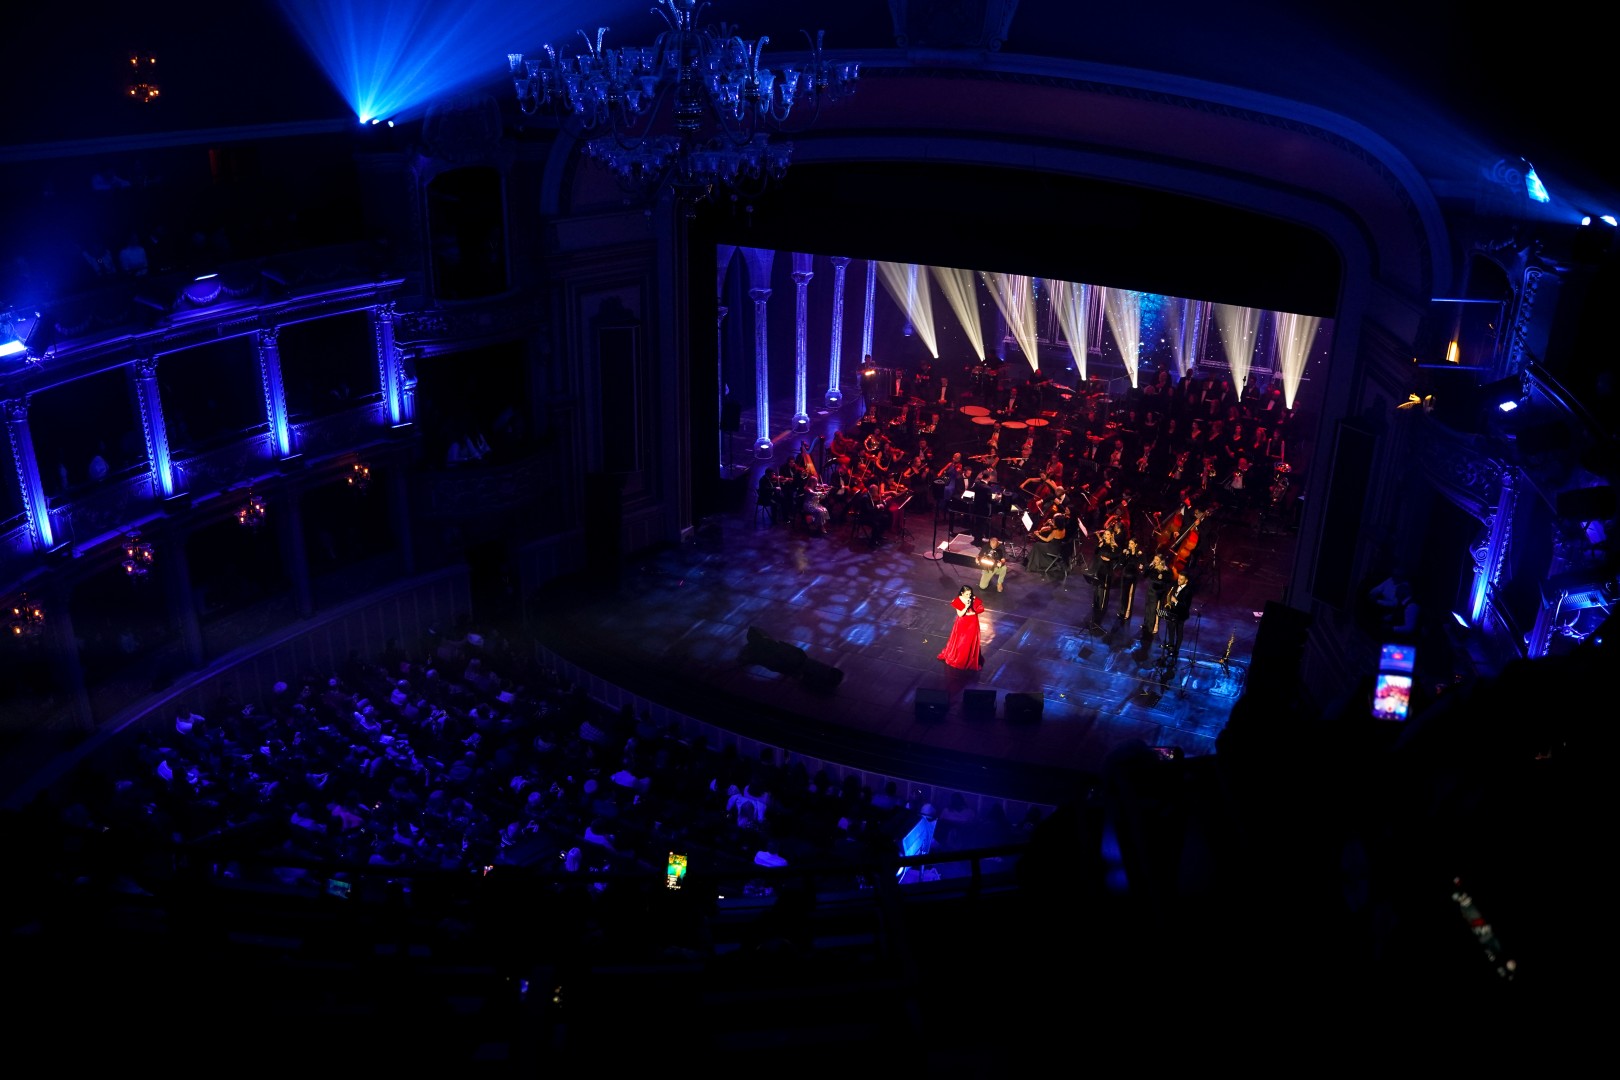 Andra at Opera Națională București in Bucharest on December 5, 2022 (1dbb8910c0)